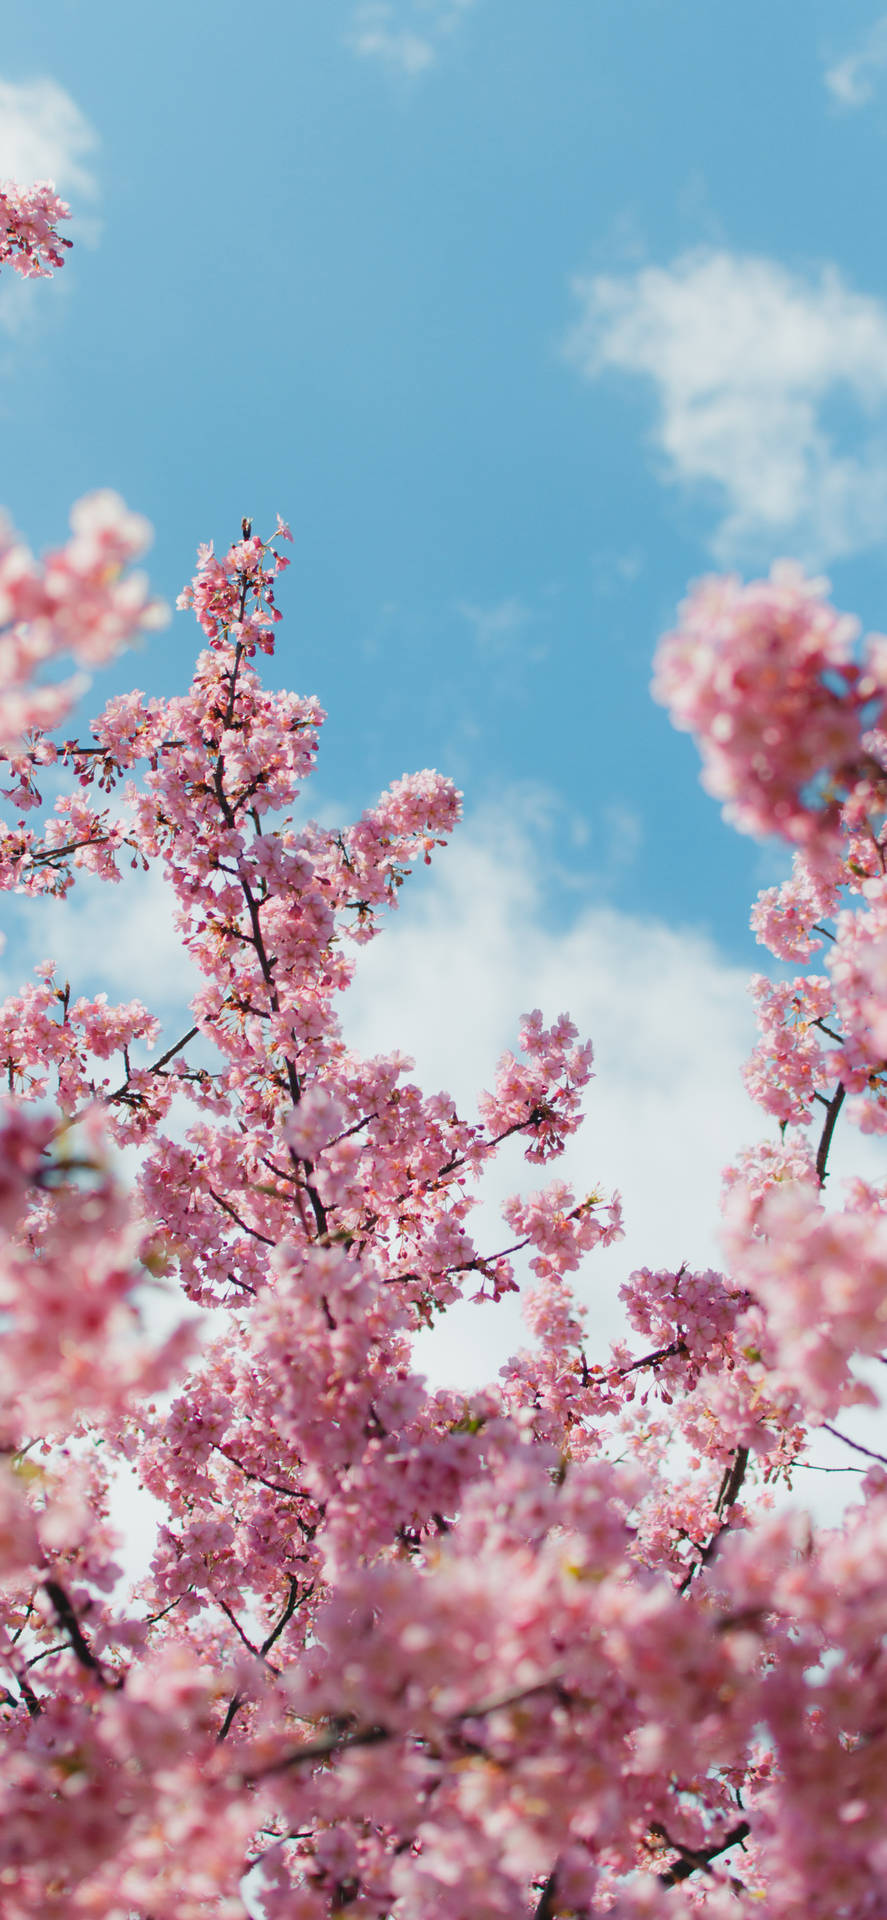 Einpinker Baum Mit Pinken Blumen Wallpaper